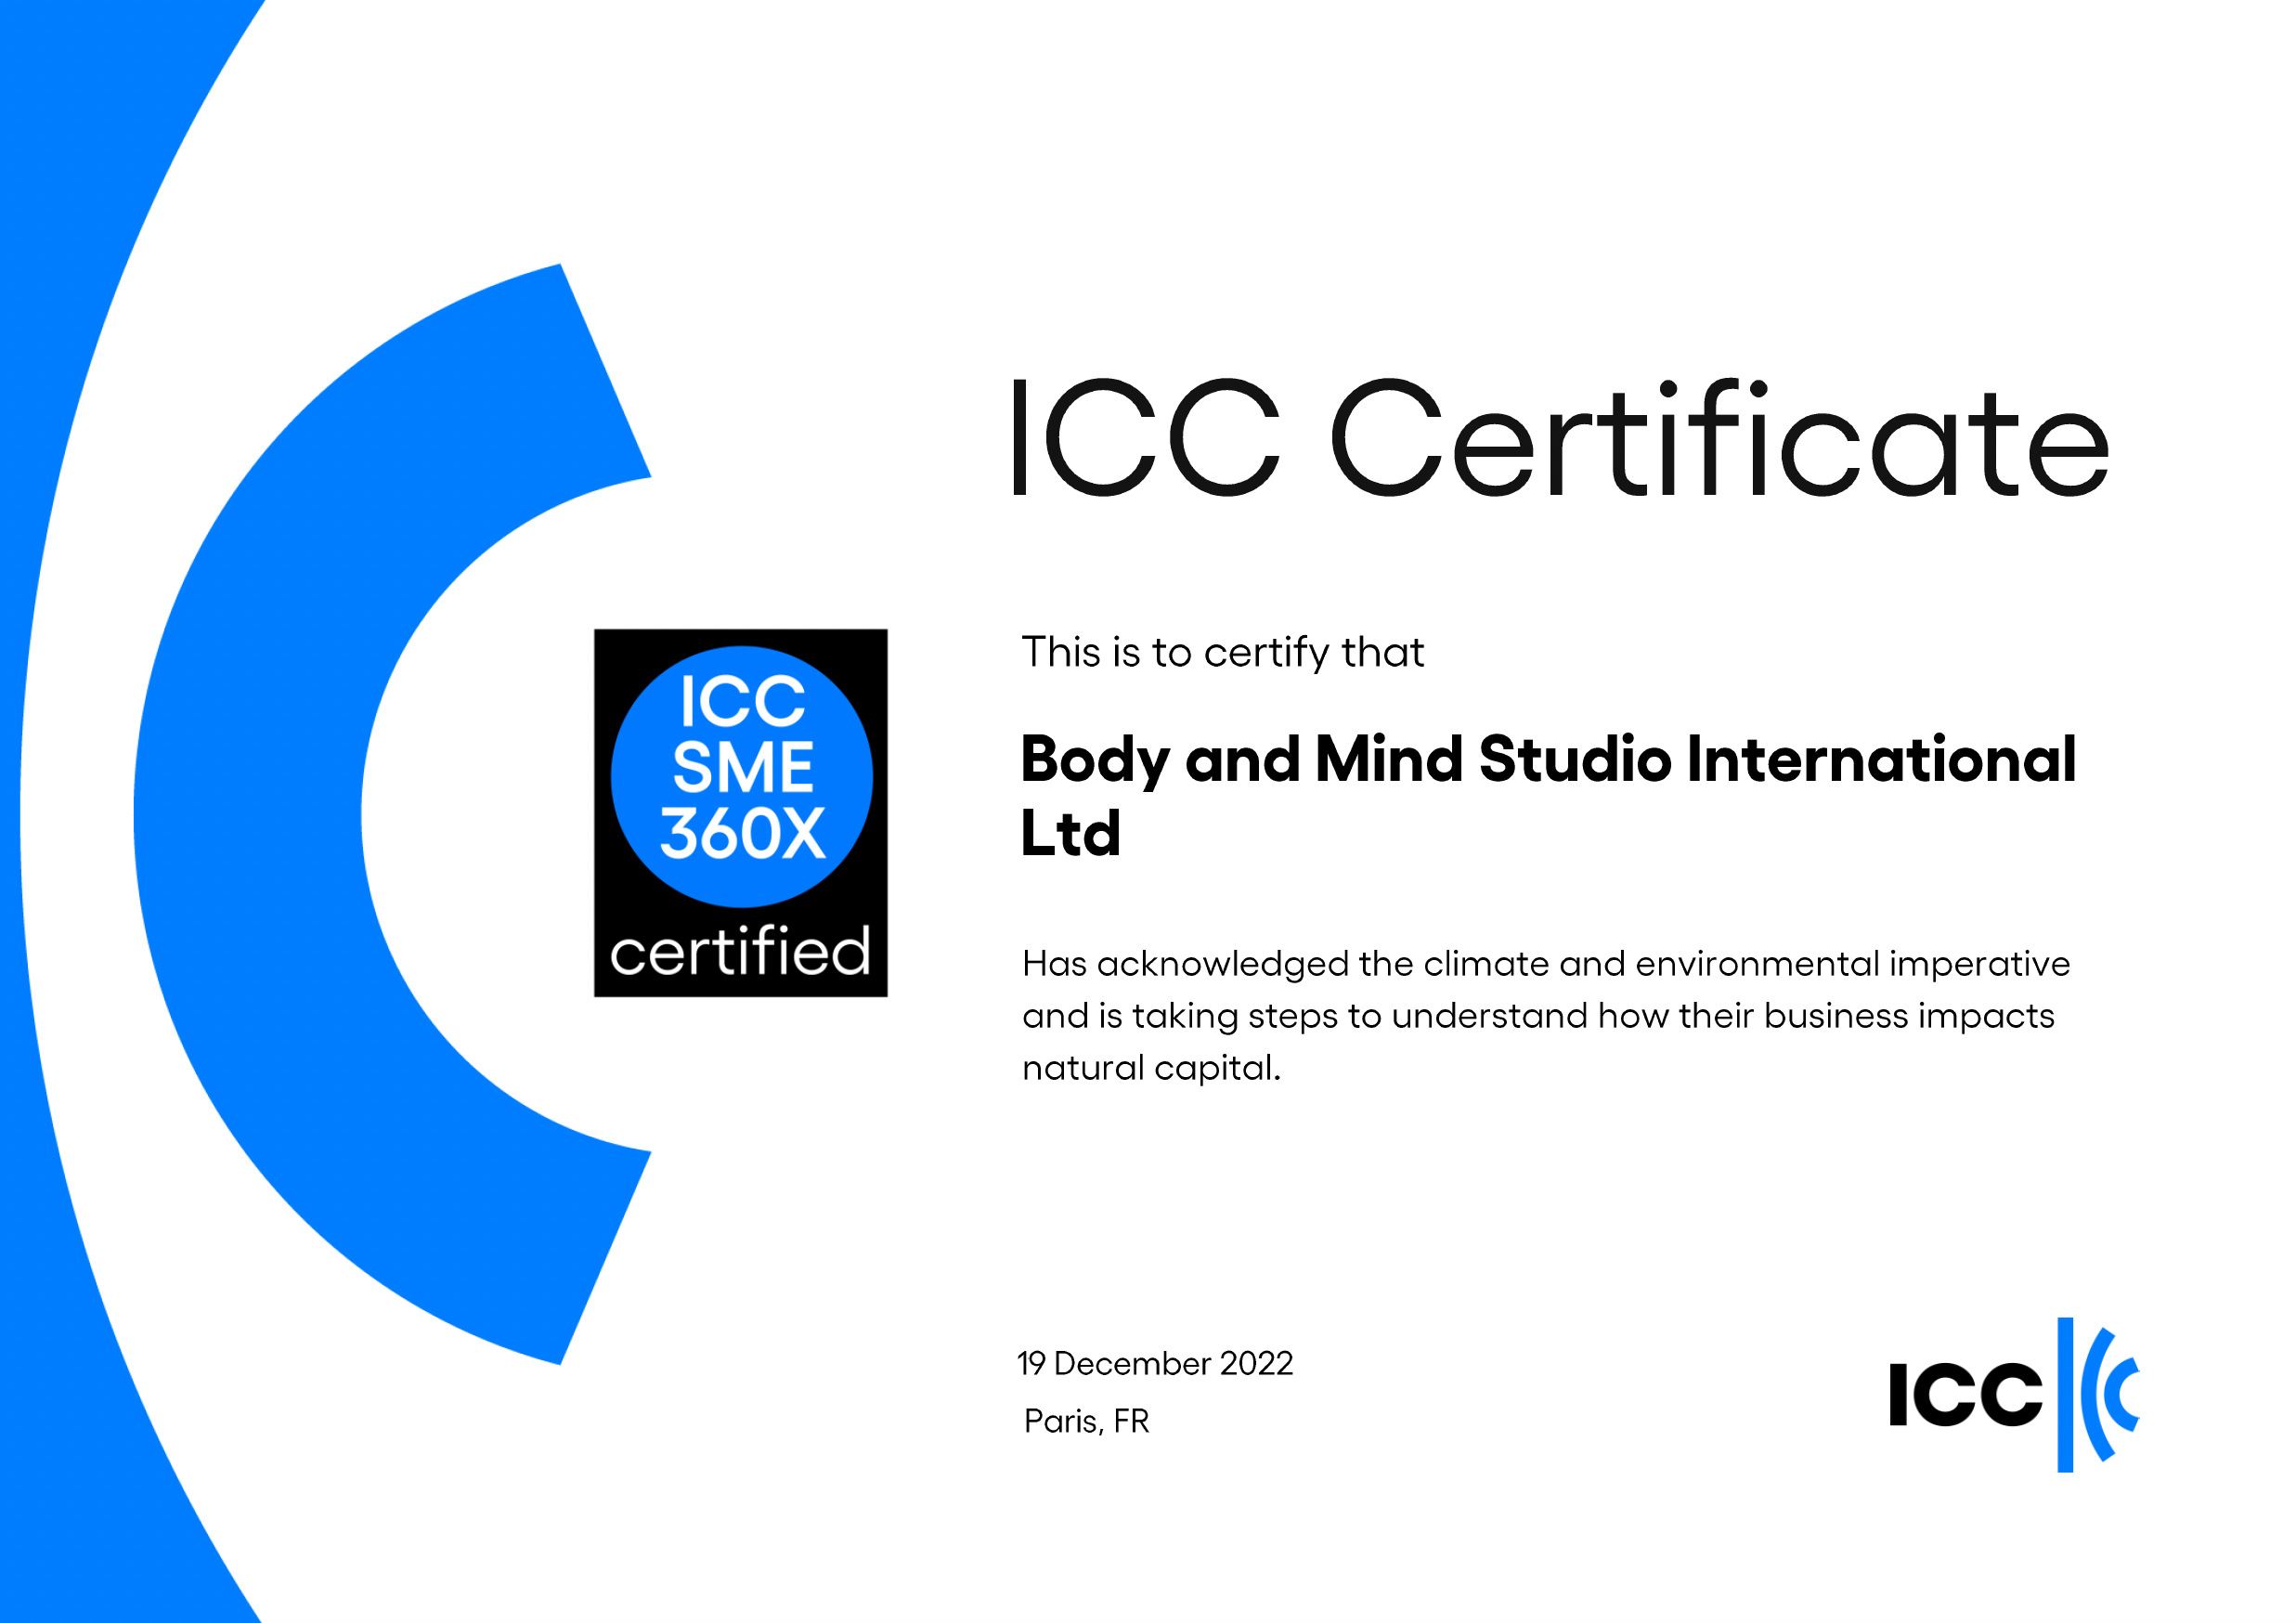 Body and Mind Studio International Ltd - An ICC SME360X Certified Company